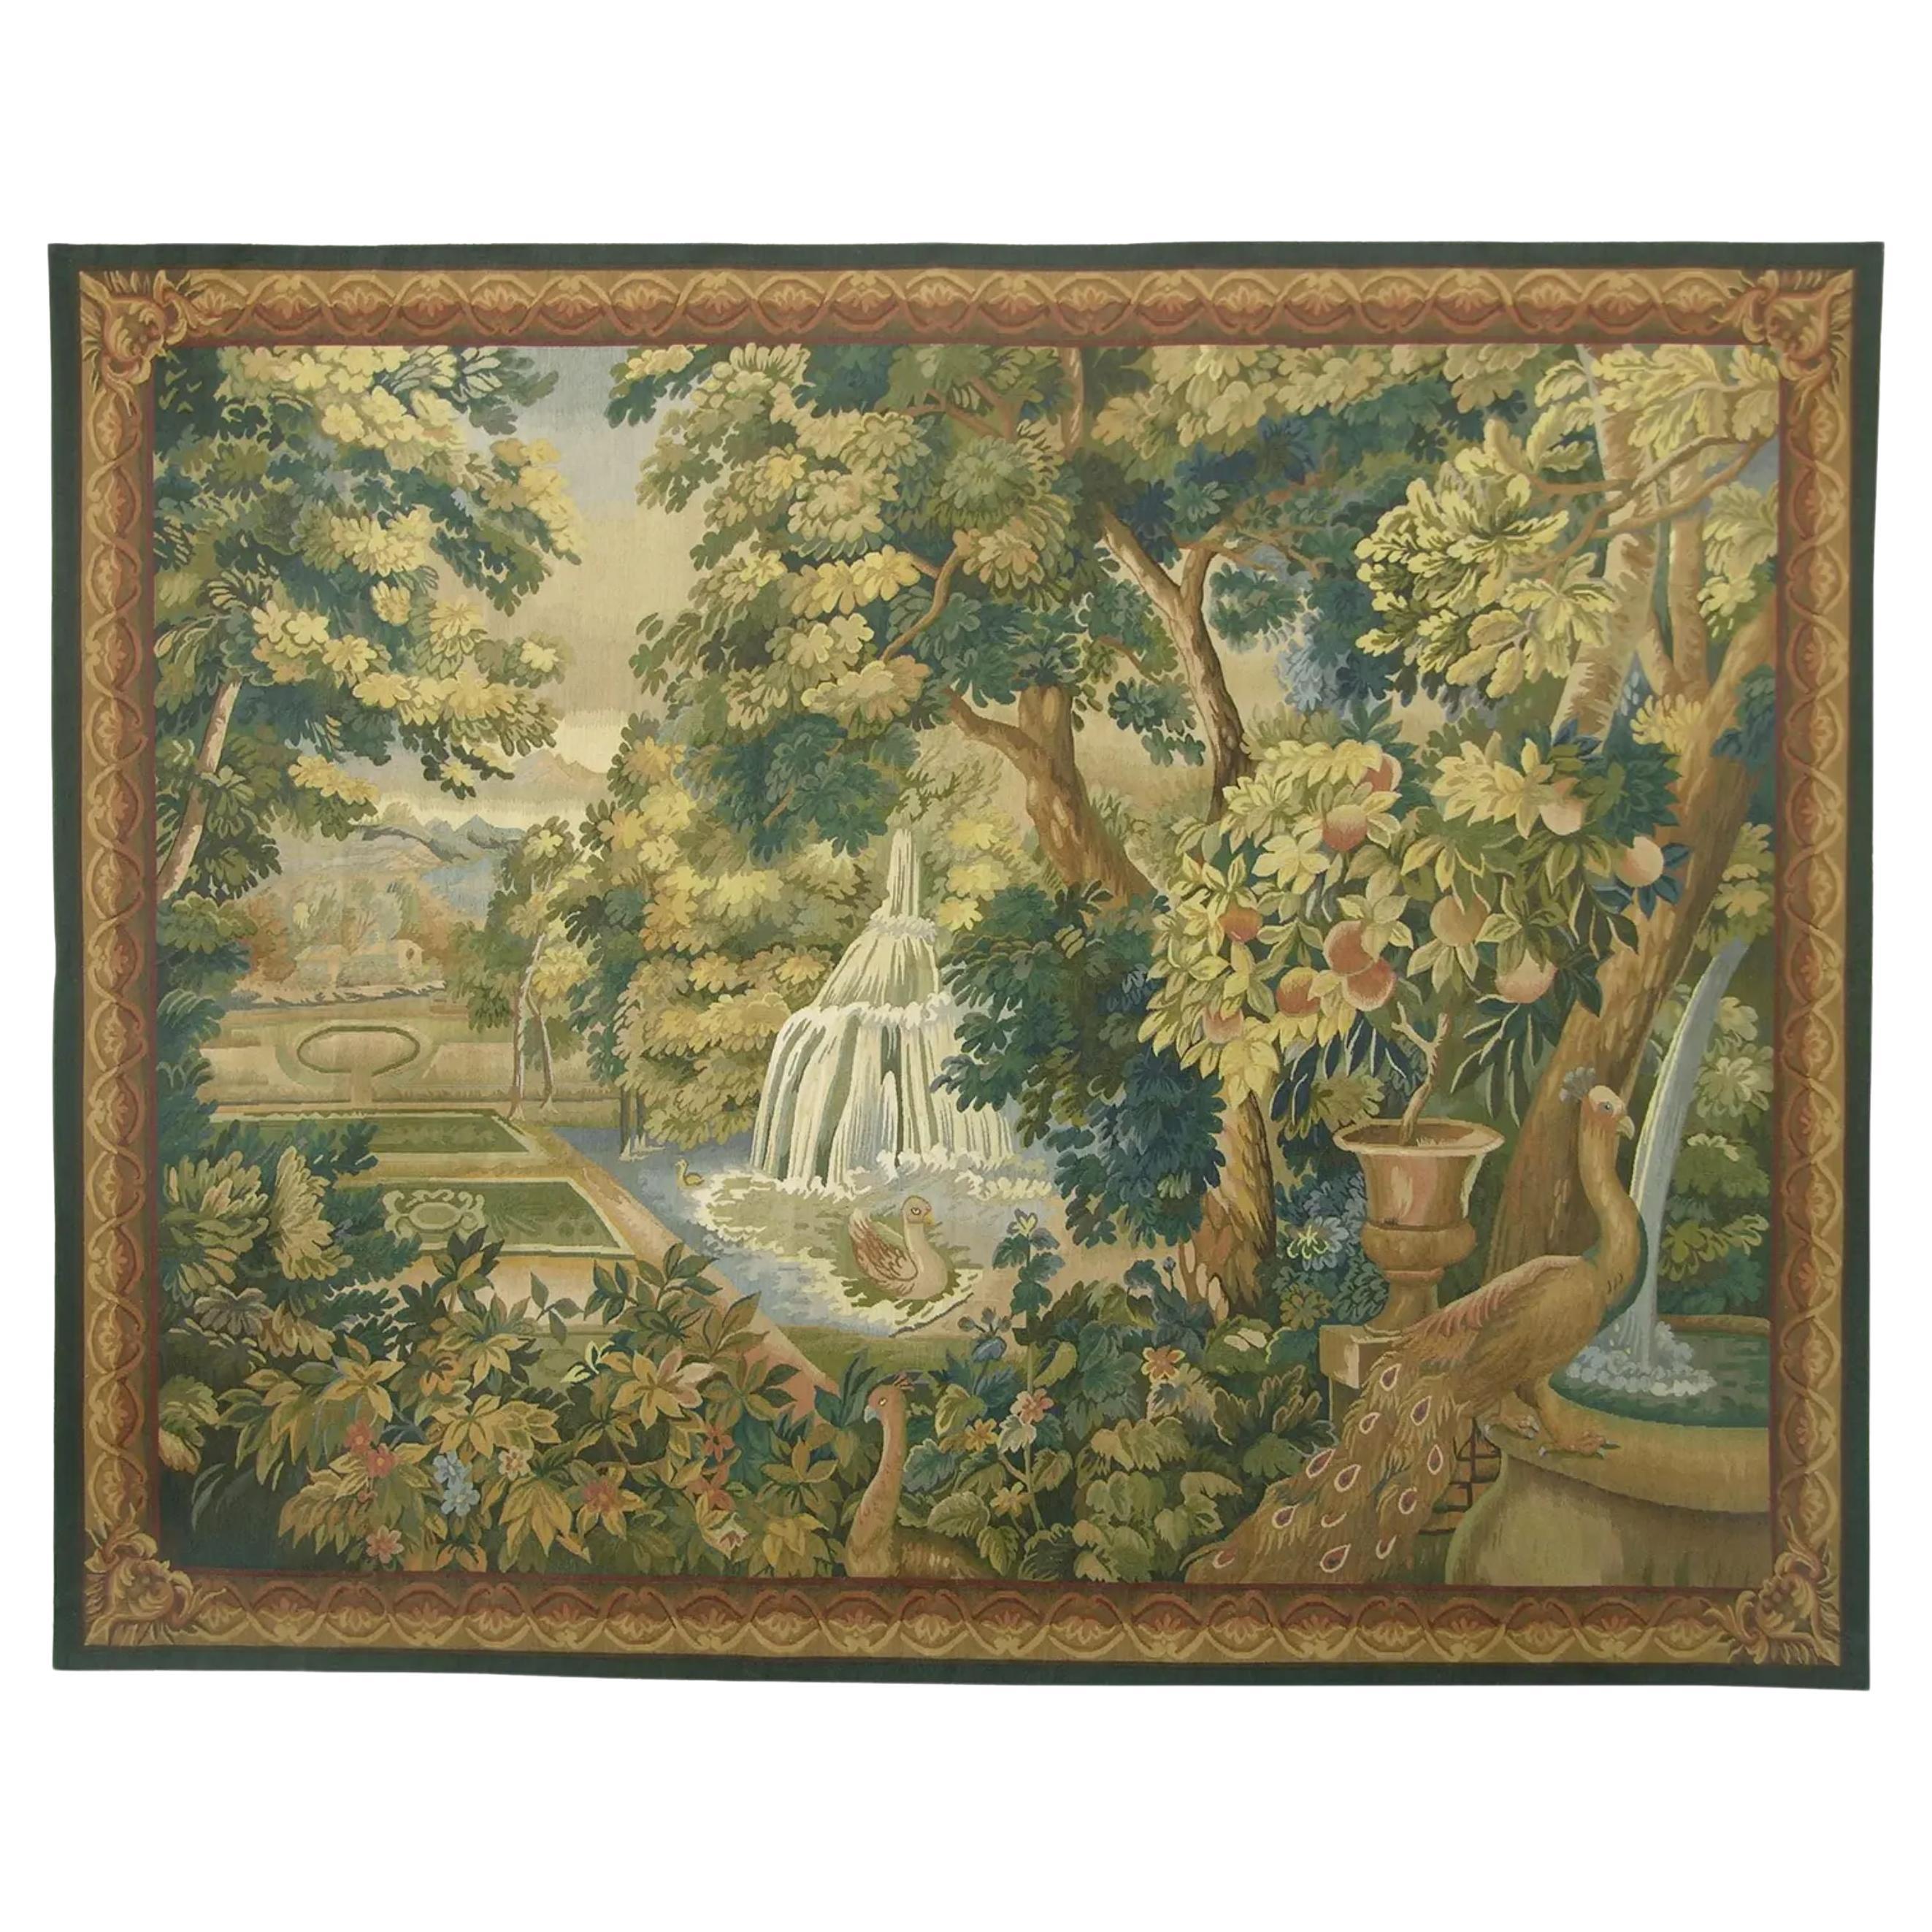 Wandteppich mit der Darstellung eines geheimen Gartens 6,5X6.1